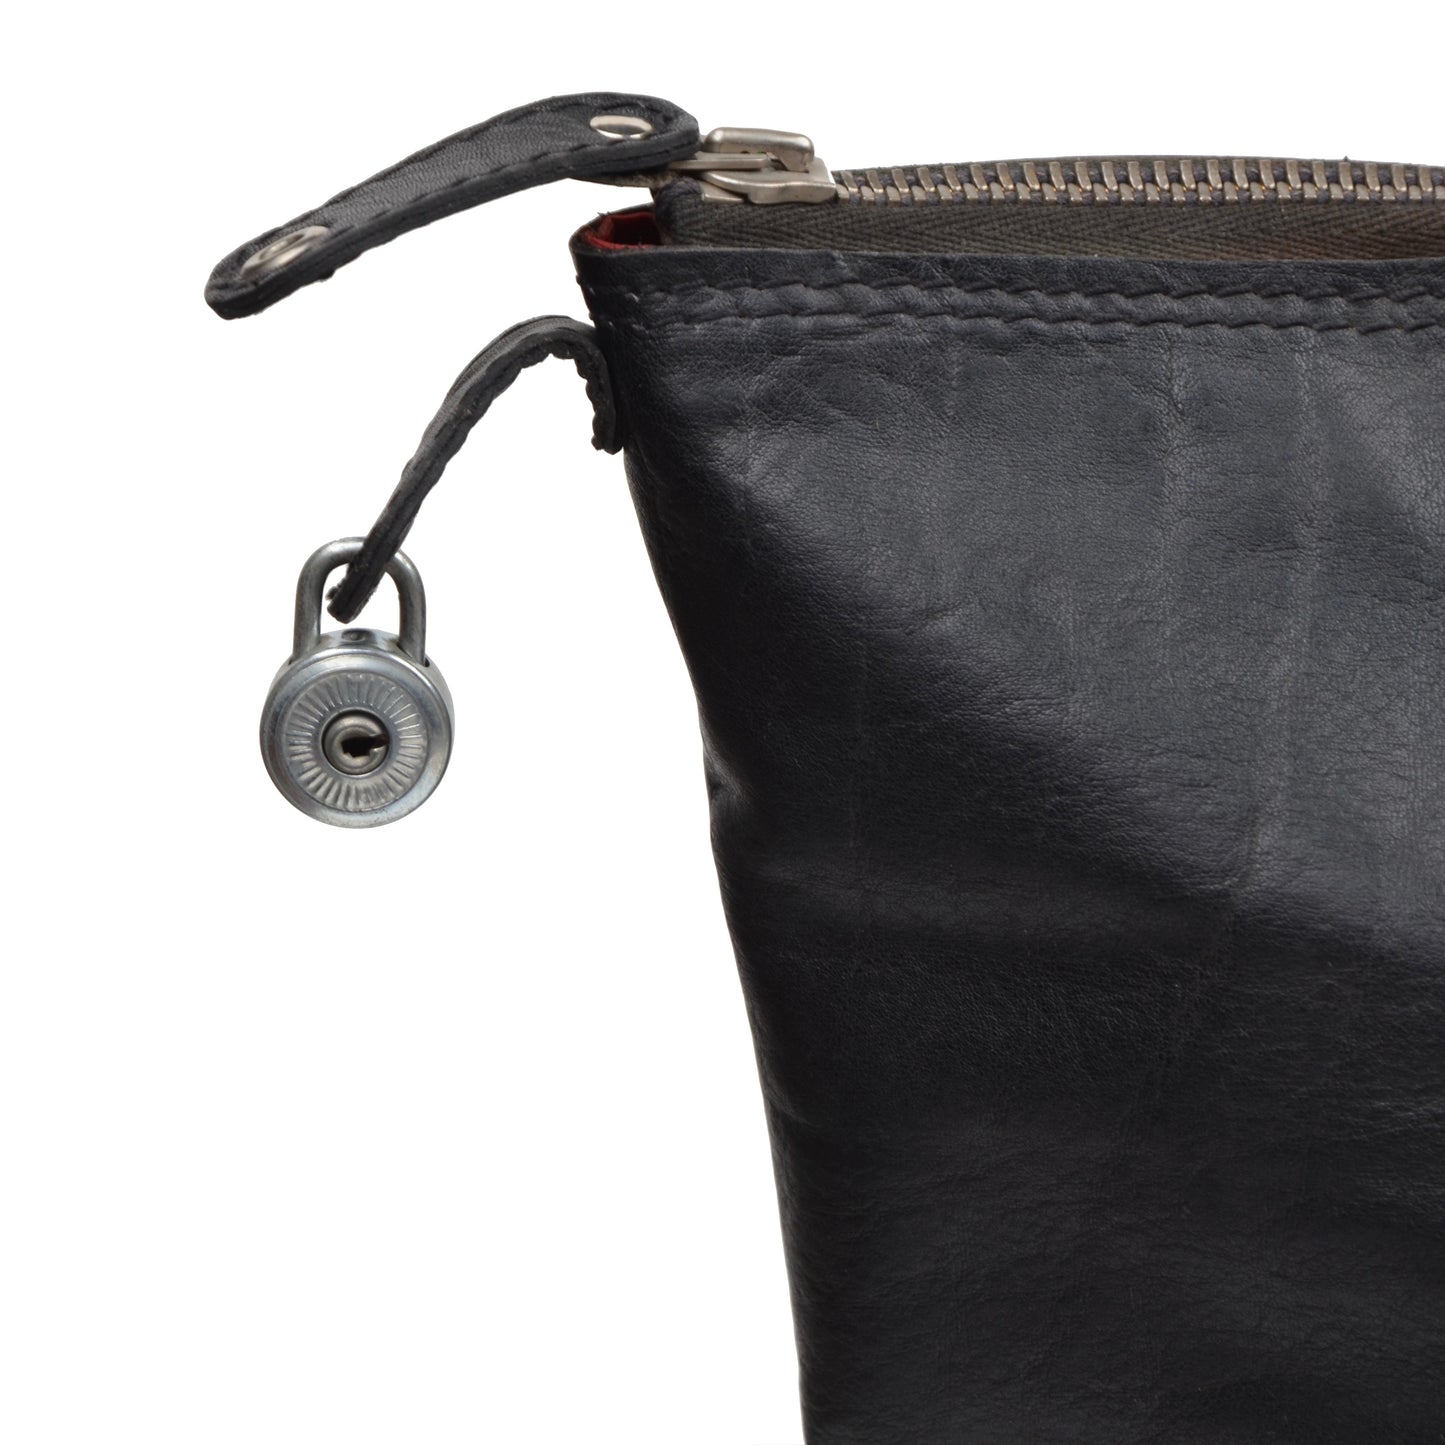 Goldpfeil Leather Weekender/Duffle Bag - Black